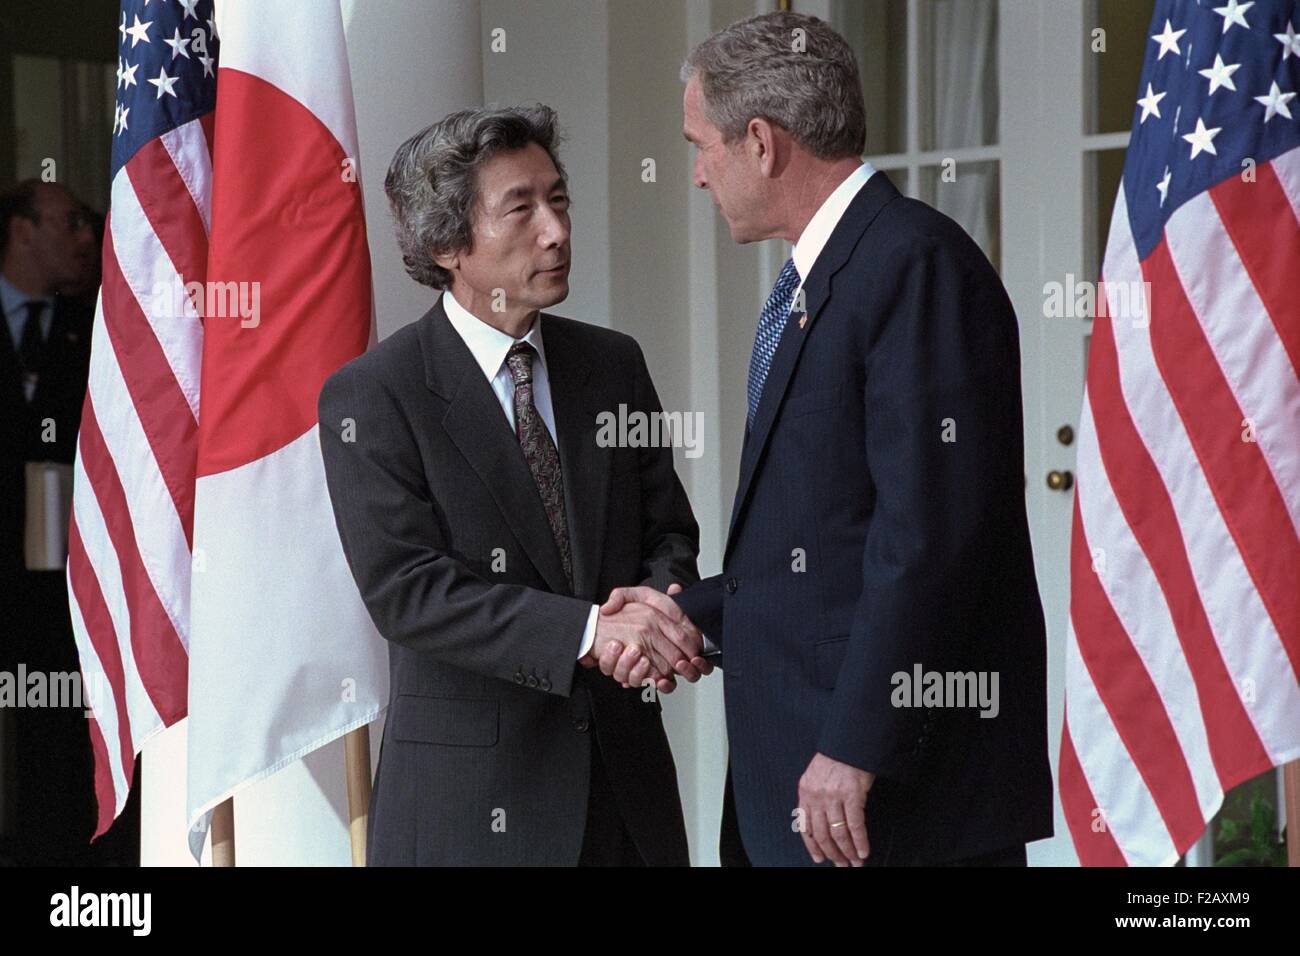 Präsident George W. Bush schüttelt Hände mit Premierminister Junichiro Koizumi Japans. 25. September 2001. Operation Enduring Freedom würde Kampf in Afghanistan am 7. Oktober 2001 beginnen. Japan wäre ein Teilnehmer humanitäre Hilfe zu leisten. (BSLOC 2015 2 169) Stockfoto